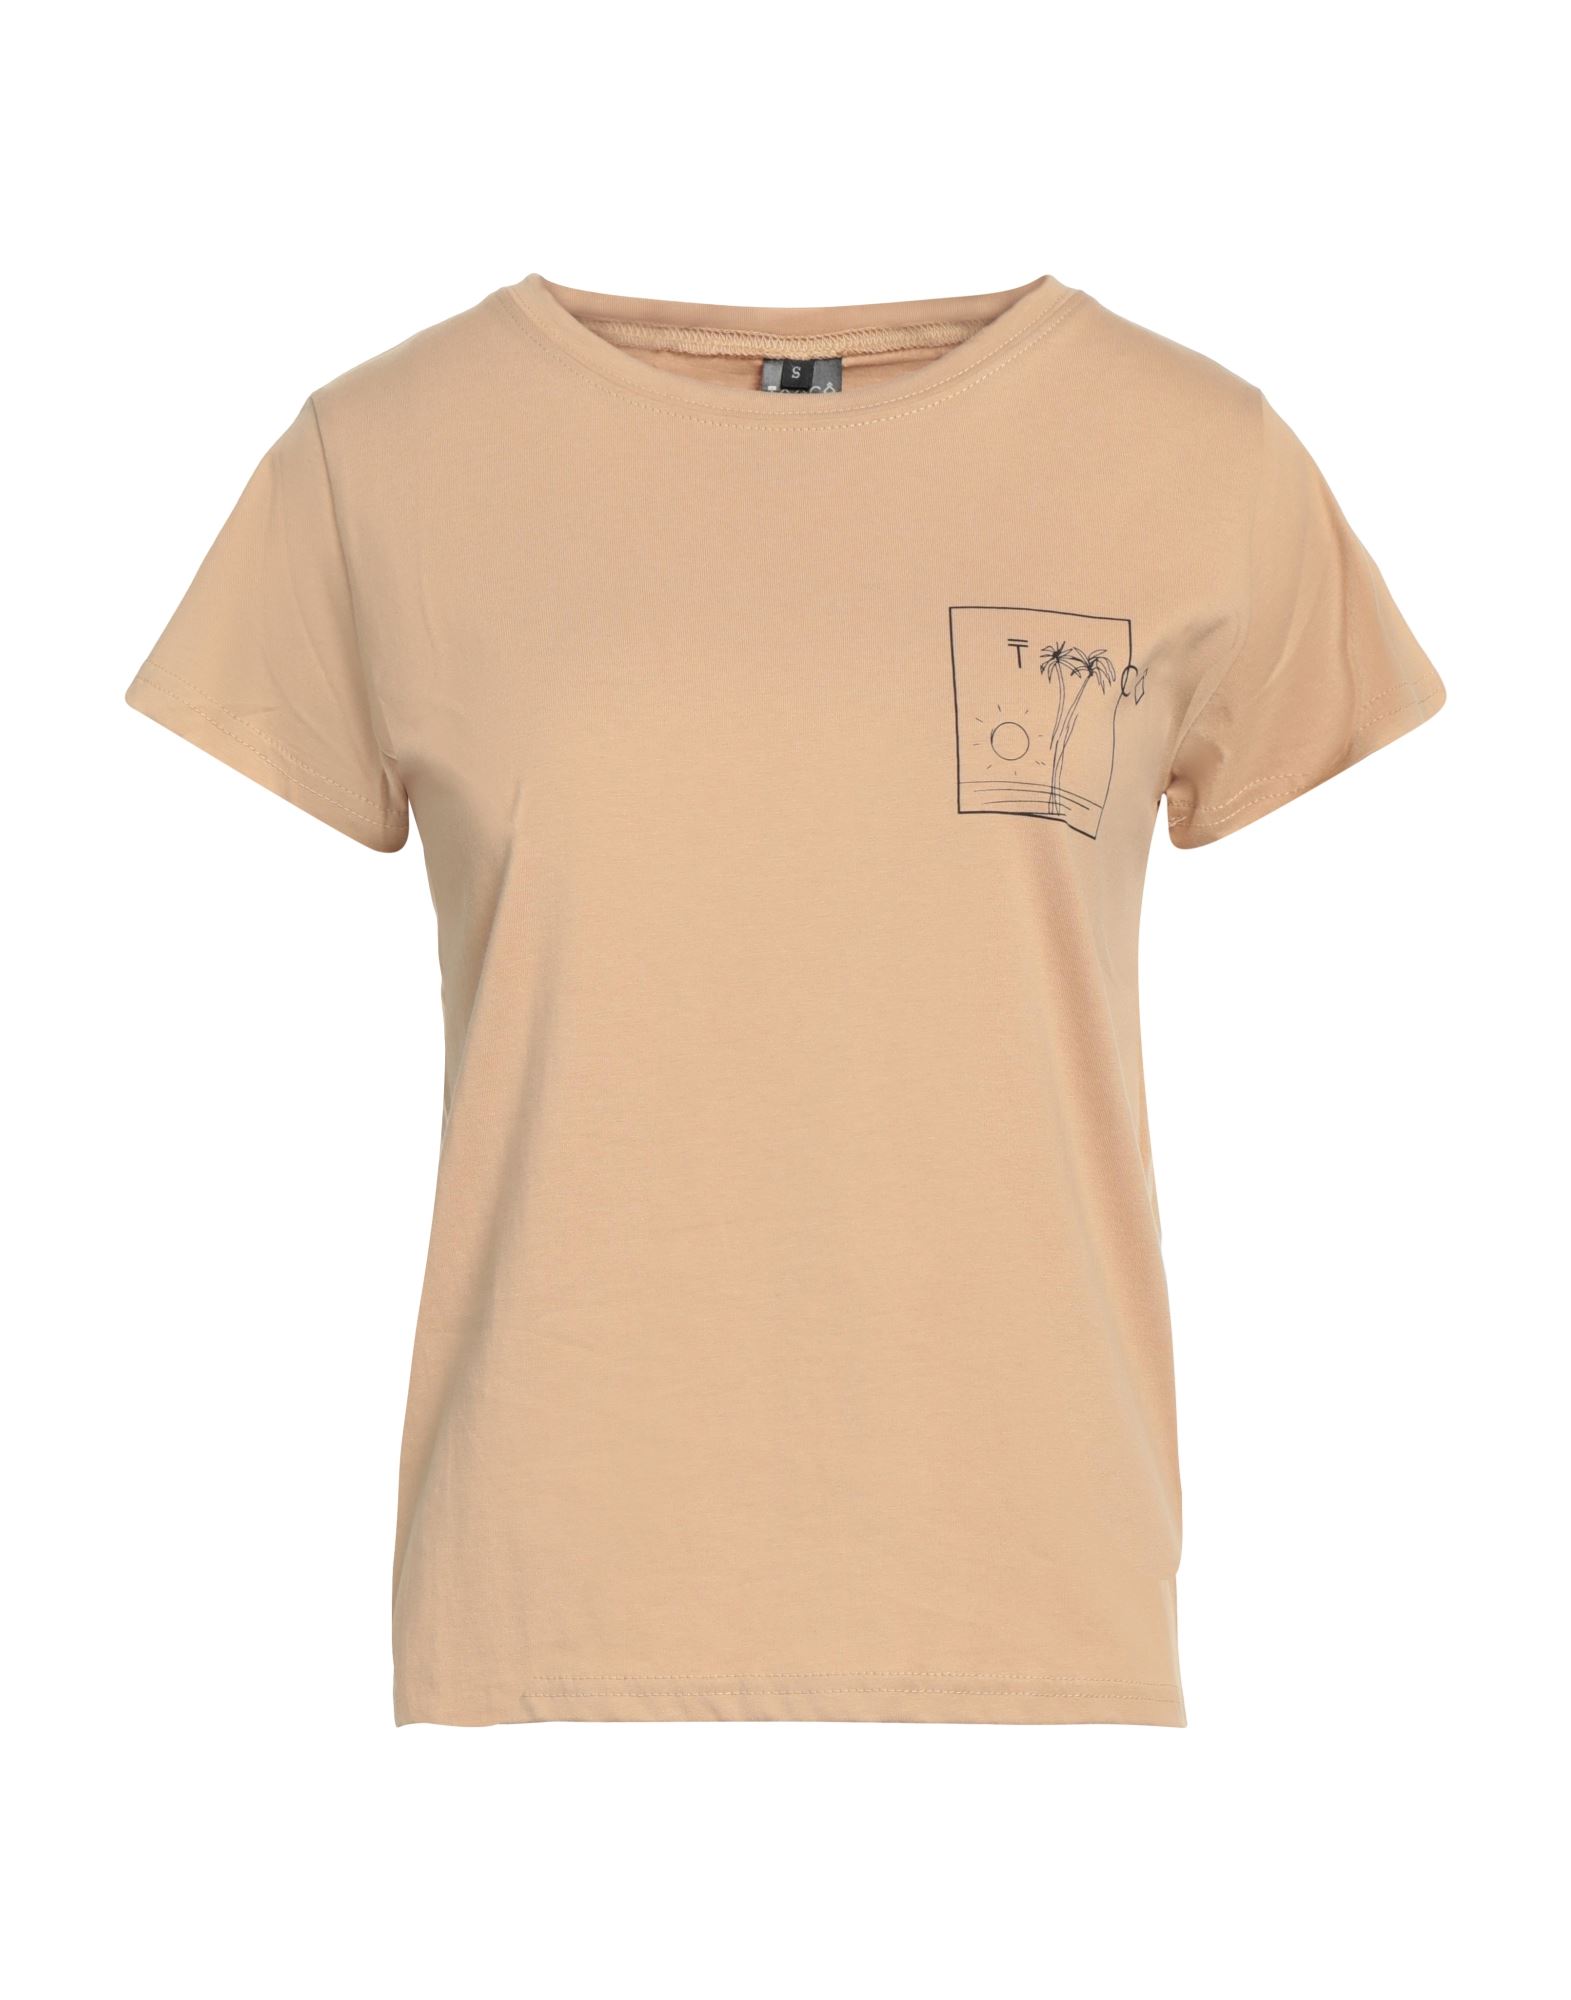 TOOCO T-shirts Damen Sand von TOOCO